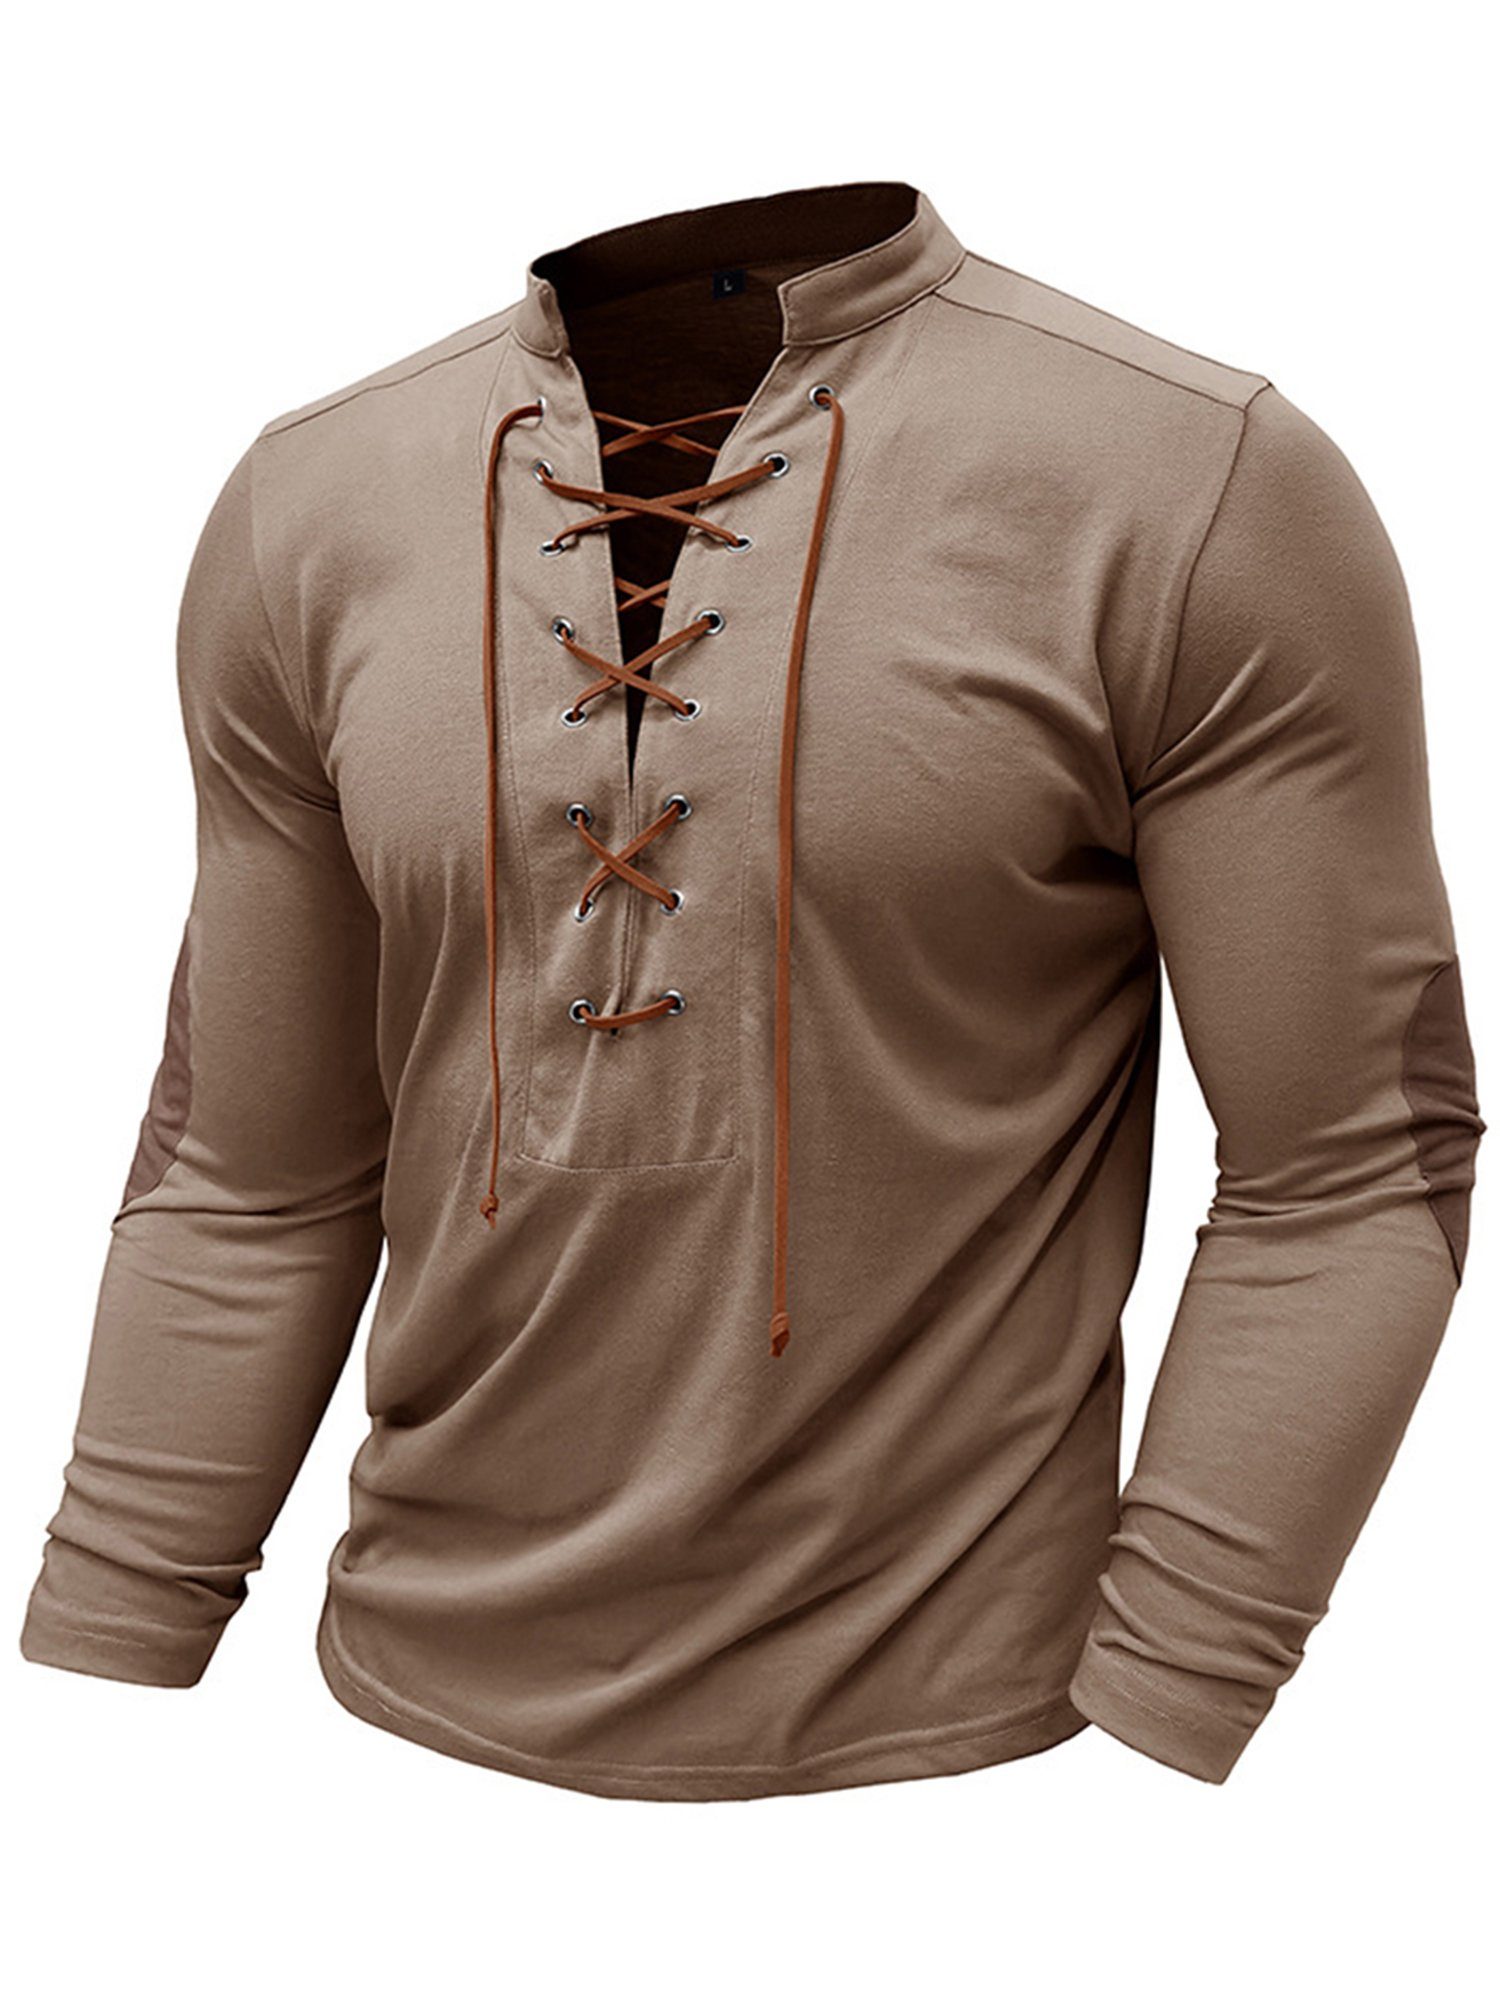 Lapastyle Langarmshirt Herren V-Ausschnitt Henleyshirt mit Top, T-shirt einfarbig Brustausschnitt Bindedesign Lässiges Khaki am Stehkragen